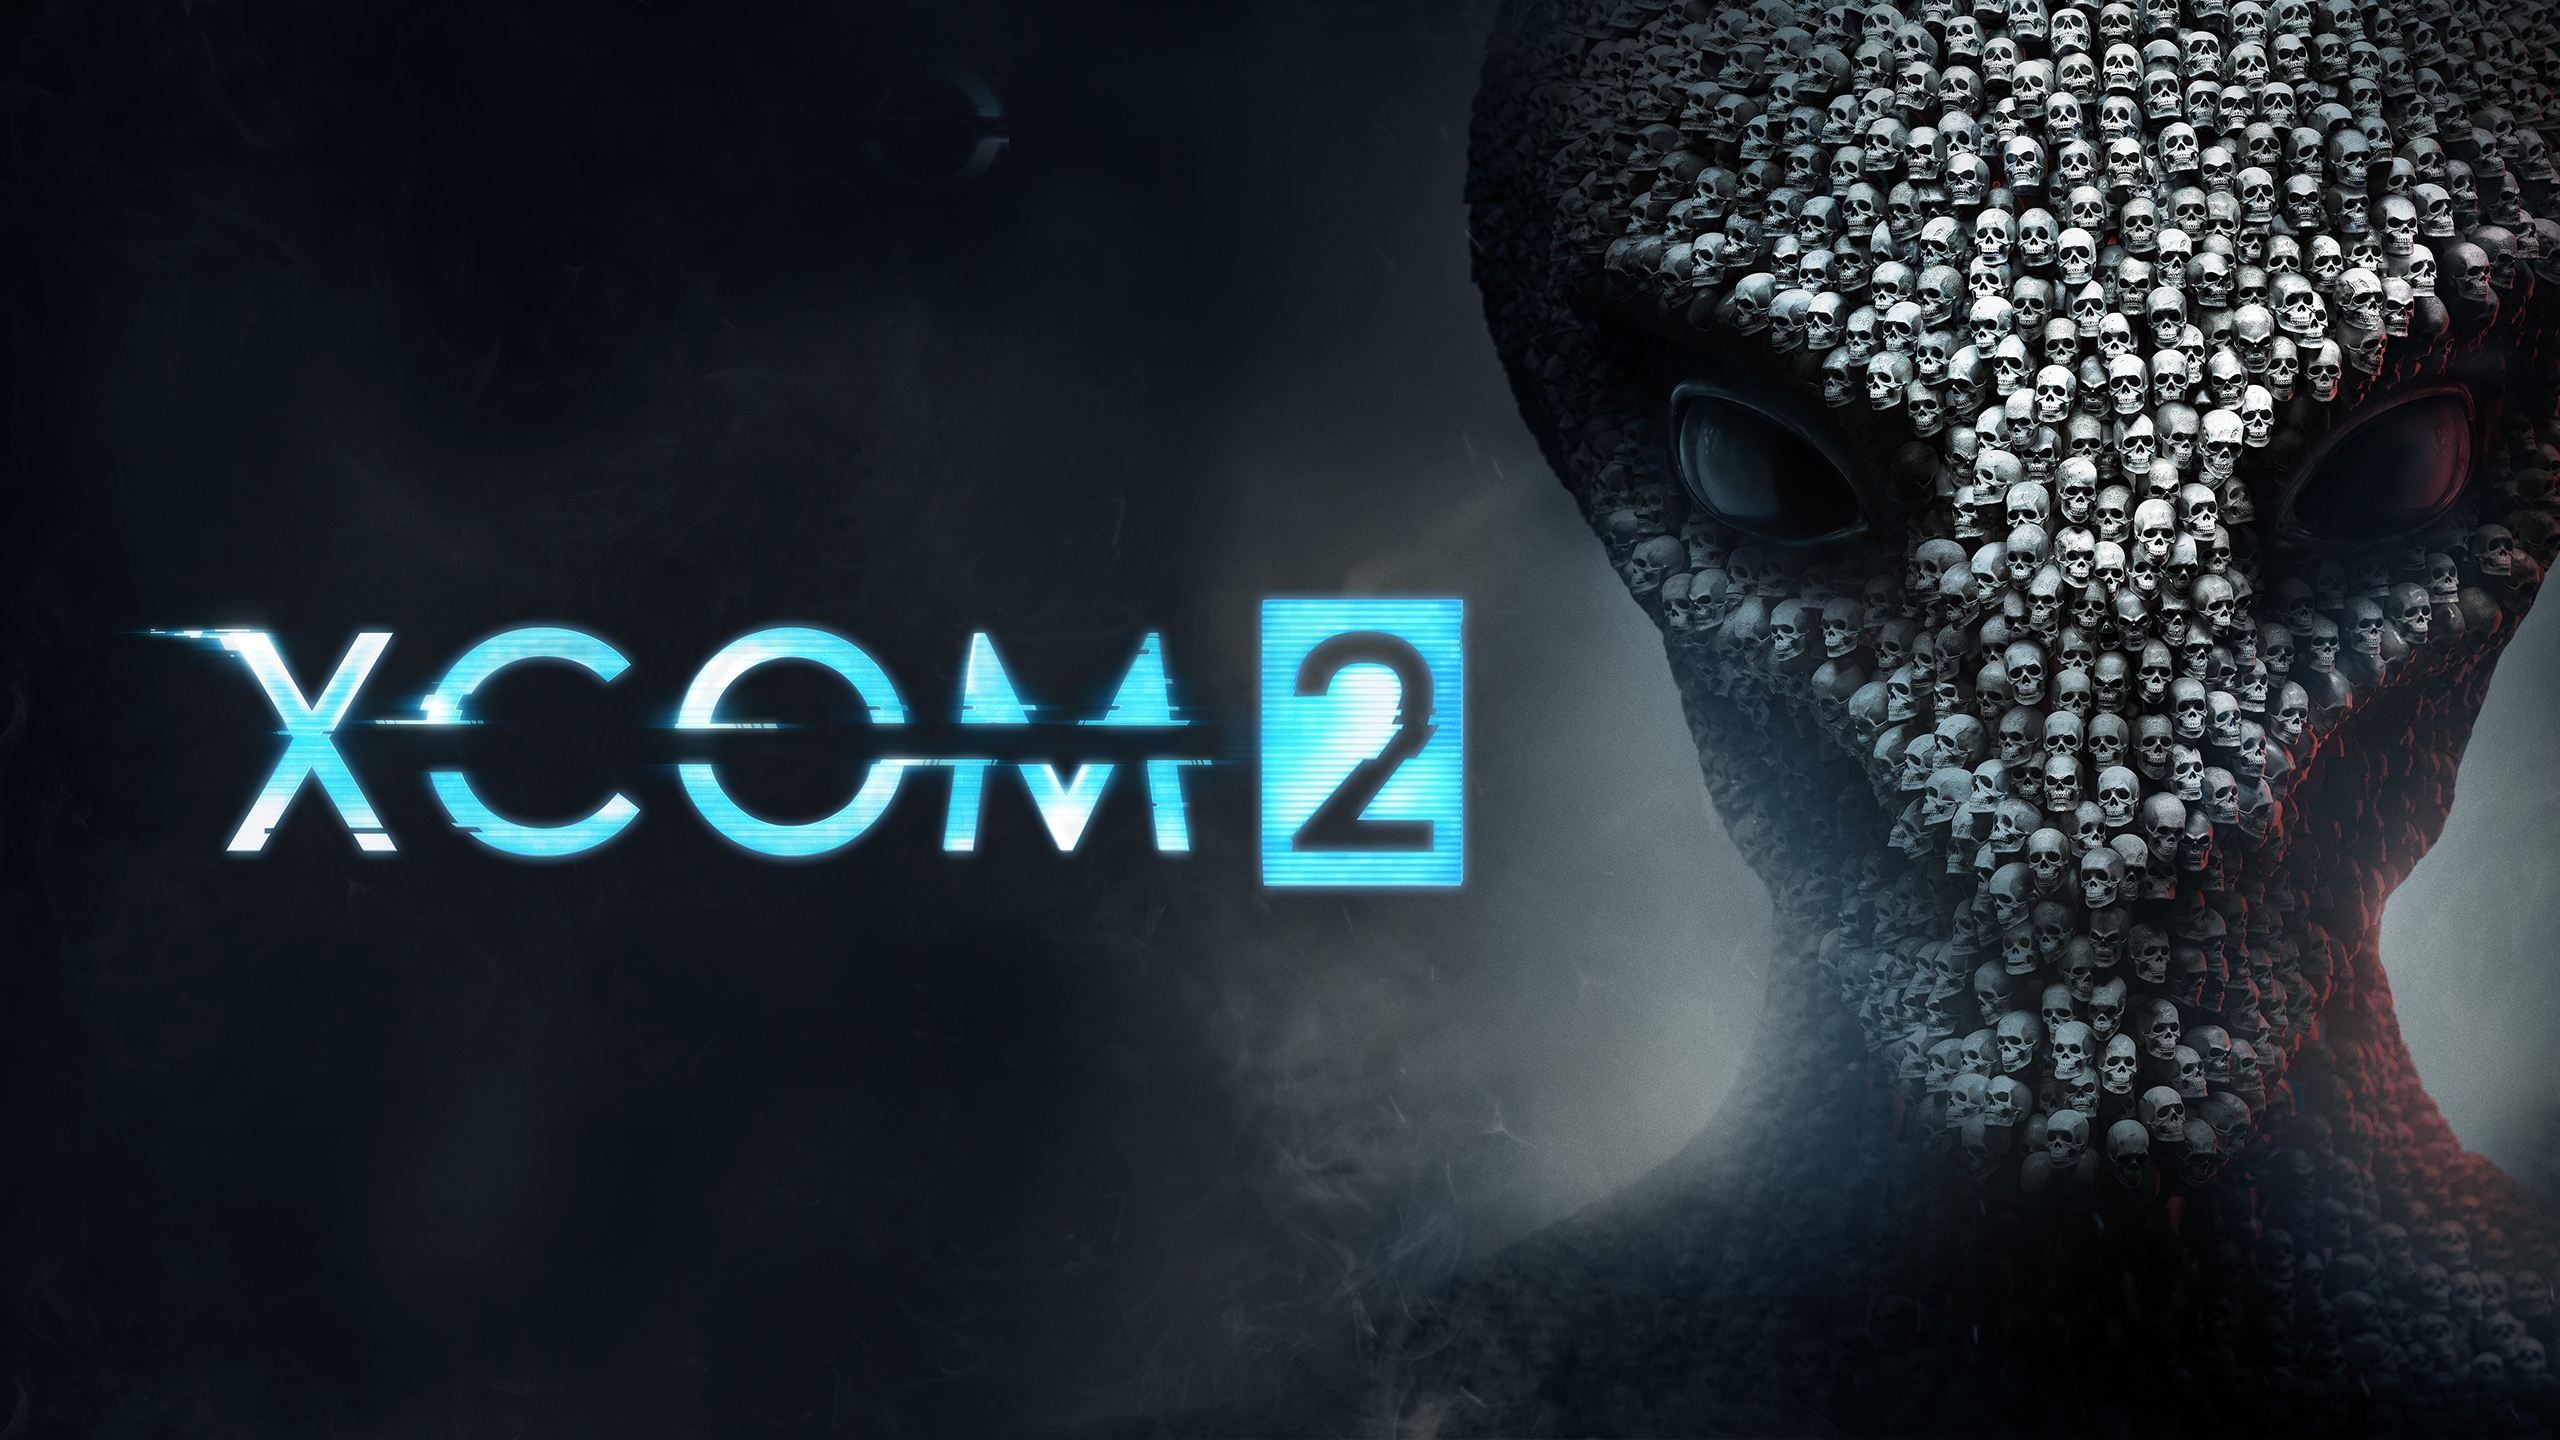 Jogos grátis da PlayStation Plus para junho tem XCOM 2 para